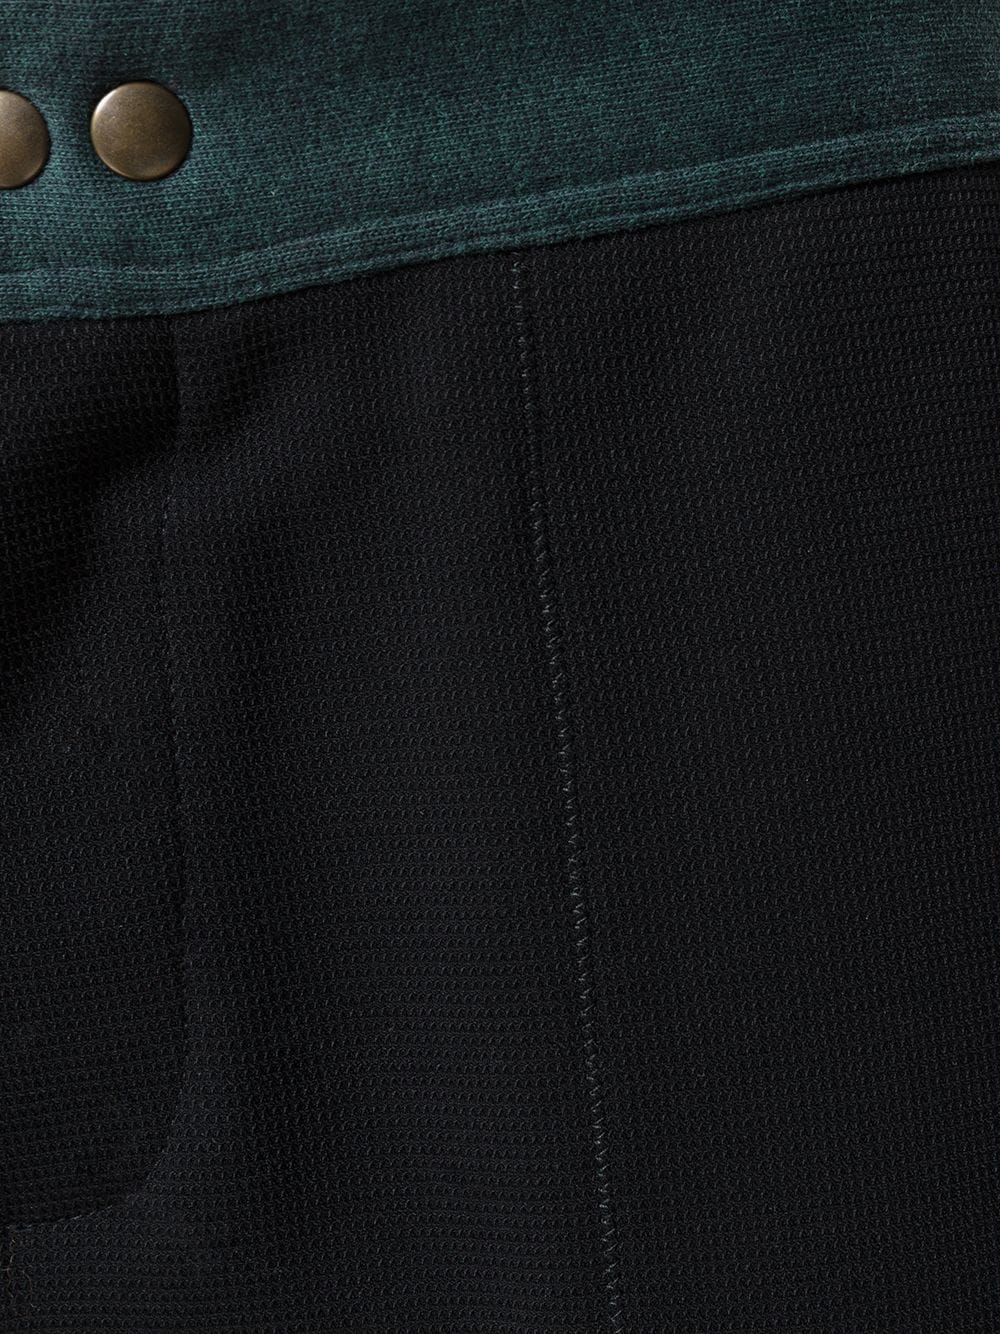 фото Mr & mrs italy брюки с контрастным поясом